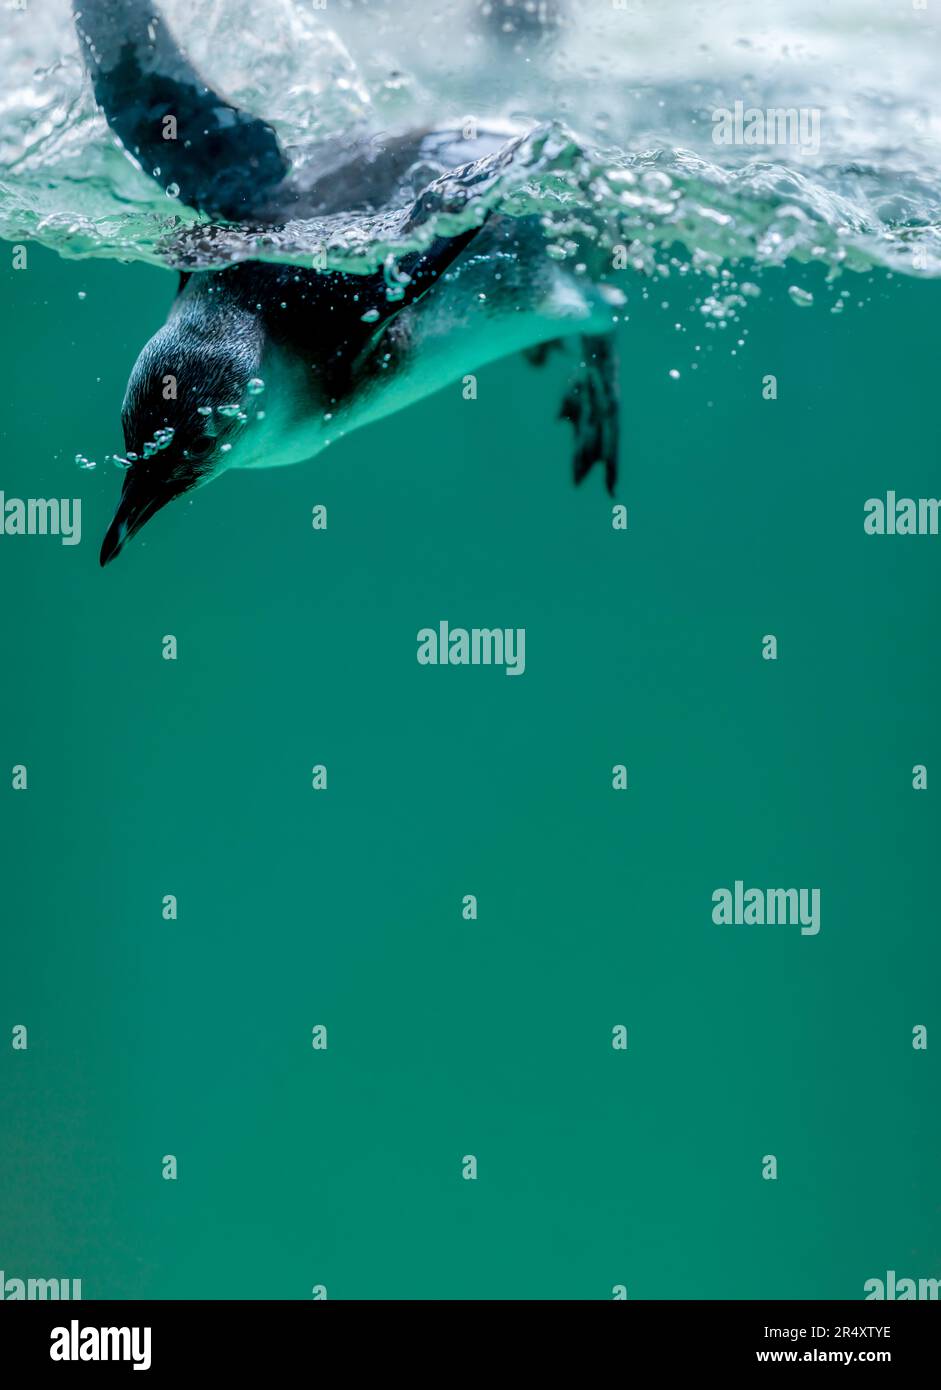 Pingouin nageant dans l'eau avec des bulles. Pingouin africain. Spheniscus demersus. Pingouin du Cap ou pingouin sud-africain. Copier l'espace. Banque D'Images